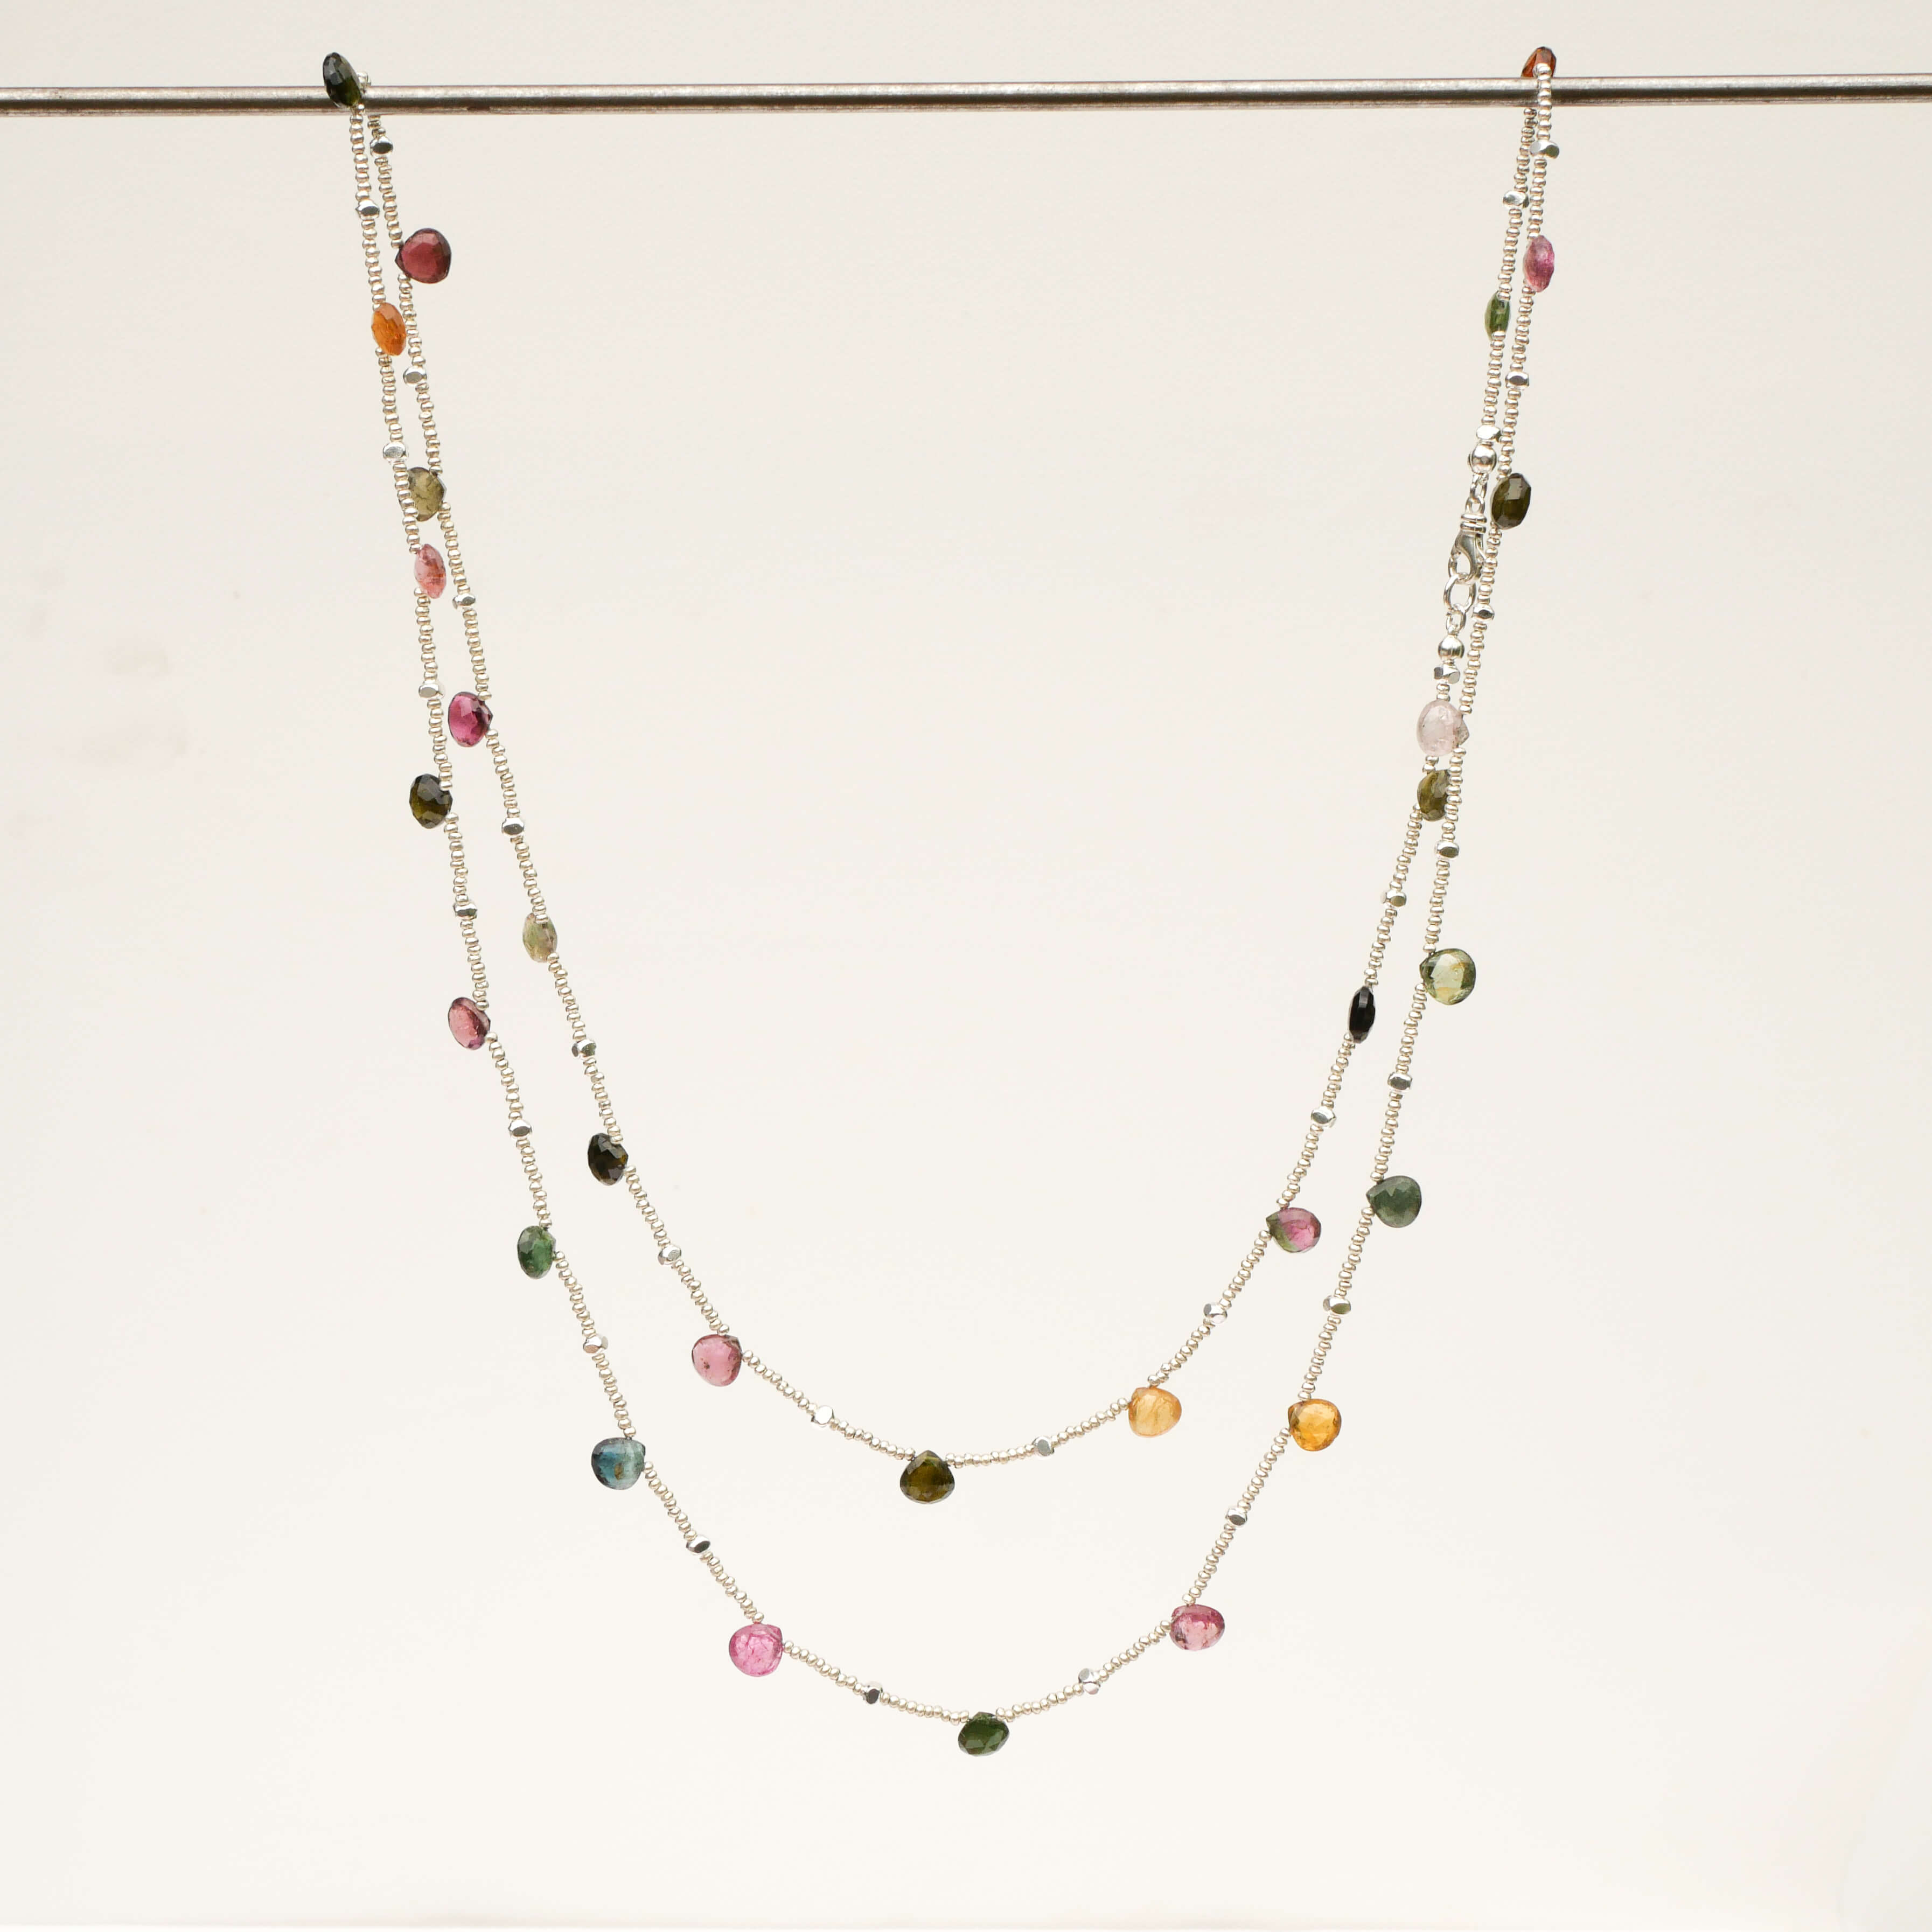 Lange Kette Athea aus silbernen Perlen mit Turmalin Tropfen in vielen Farben von pink bis grün - TRUE NUGGETS of love